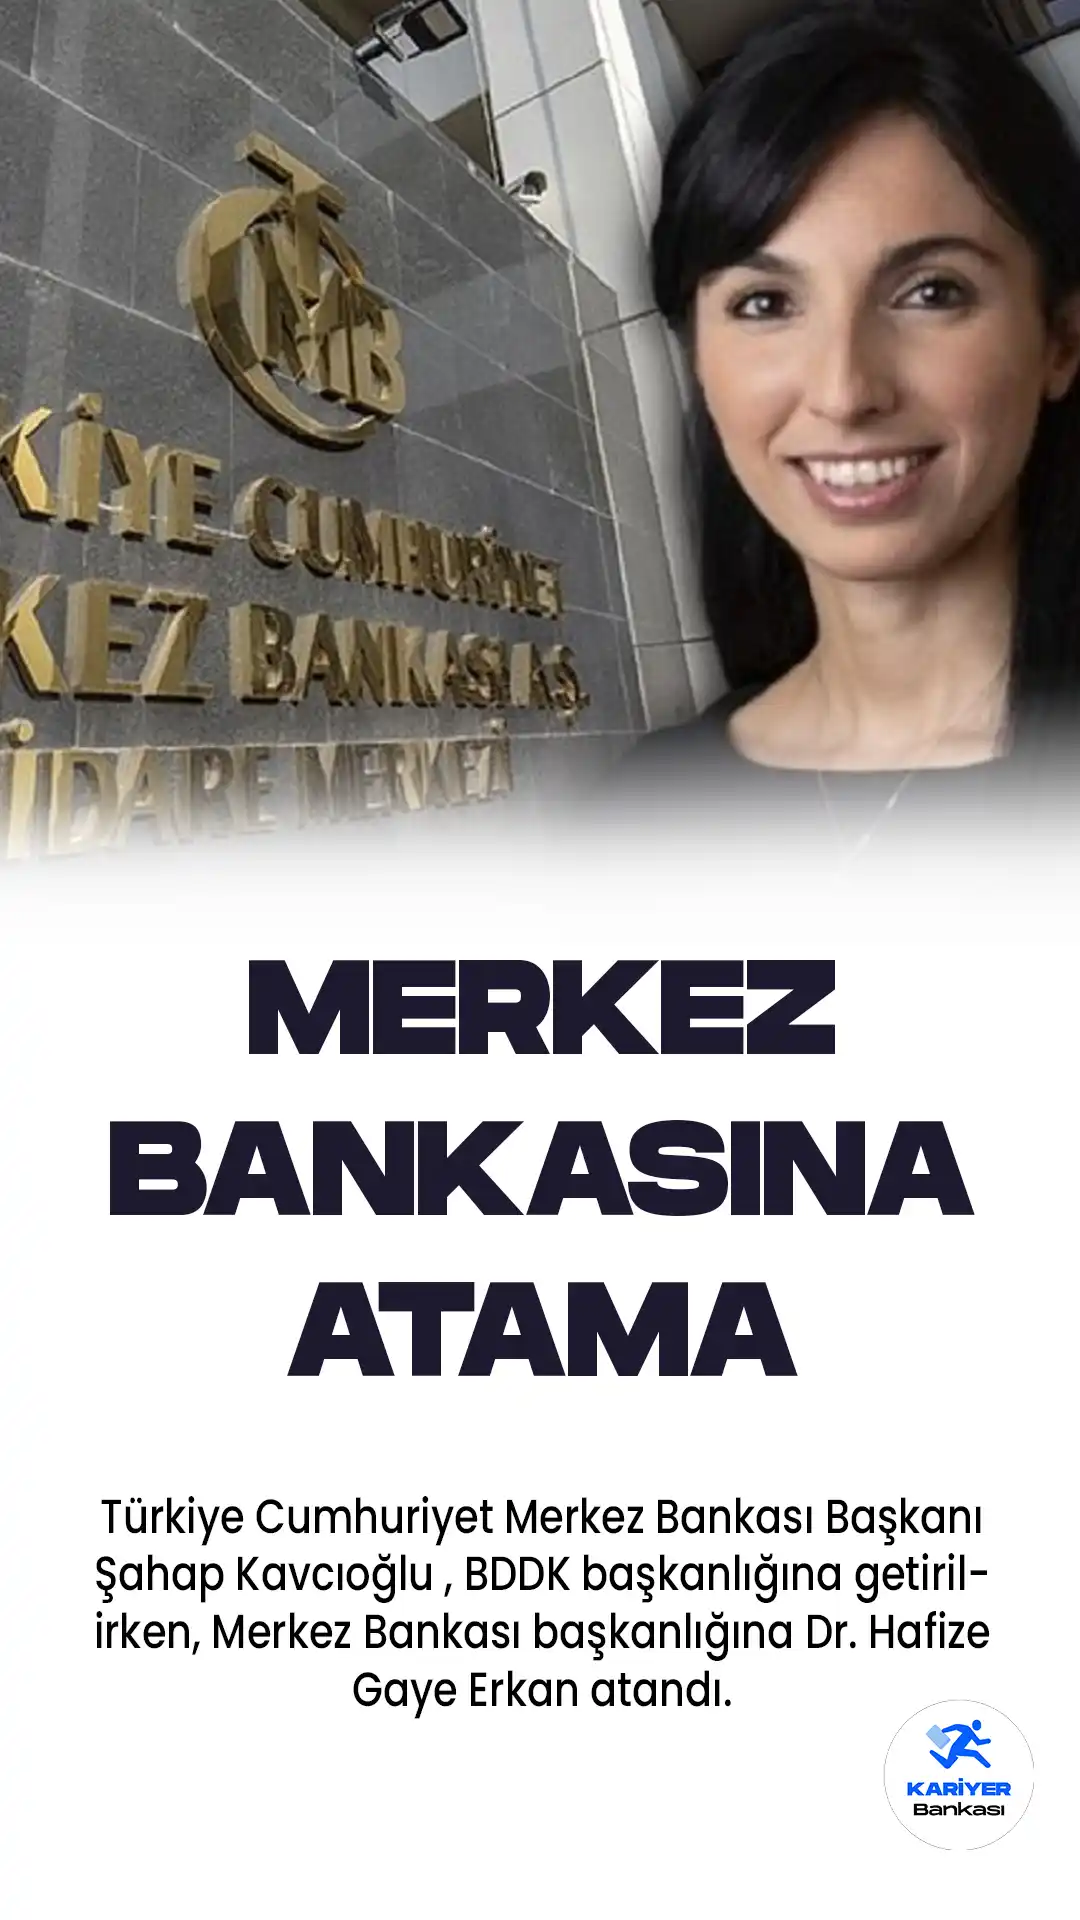 Türkiye Cumhuriyet Merkez Bankası Başkanı Şahap Kavcıoğlu , BDDK başkanlığına getirilirken, Merkez Bankası başkanlığına Dr. Hafize Gaye Erkan atandı.